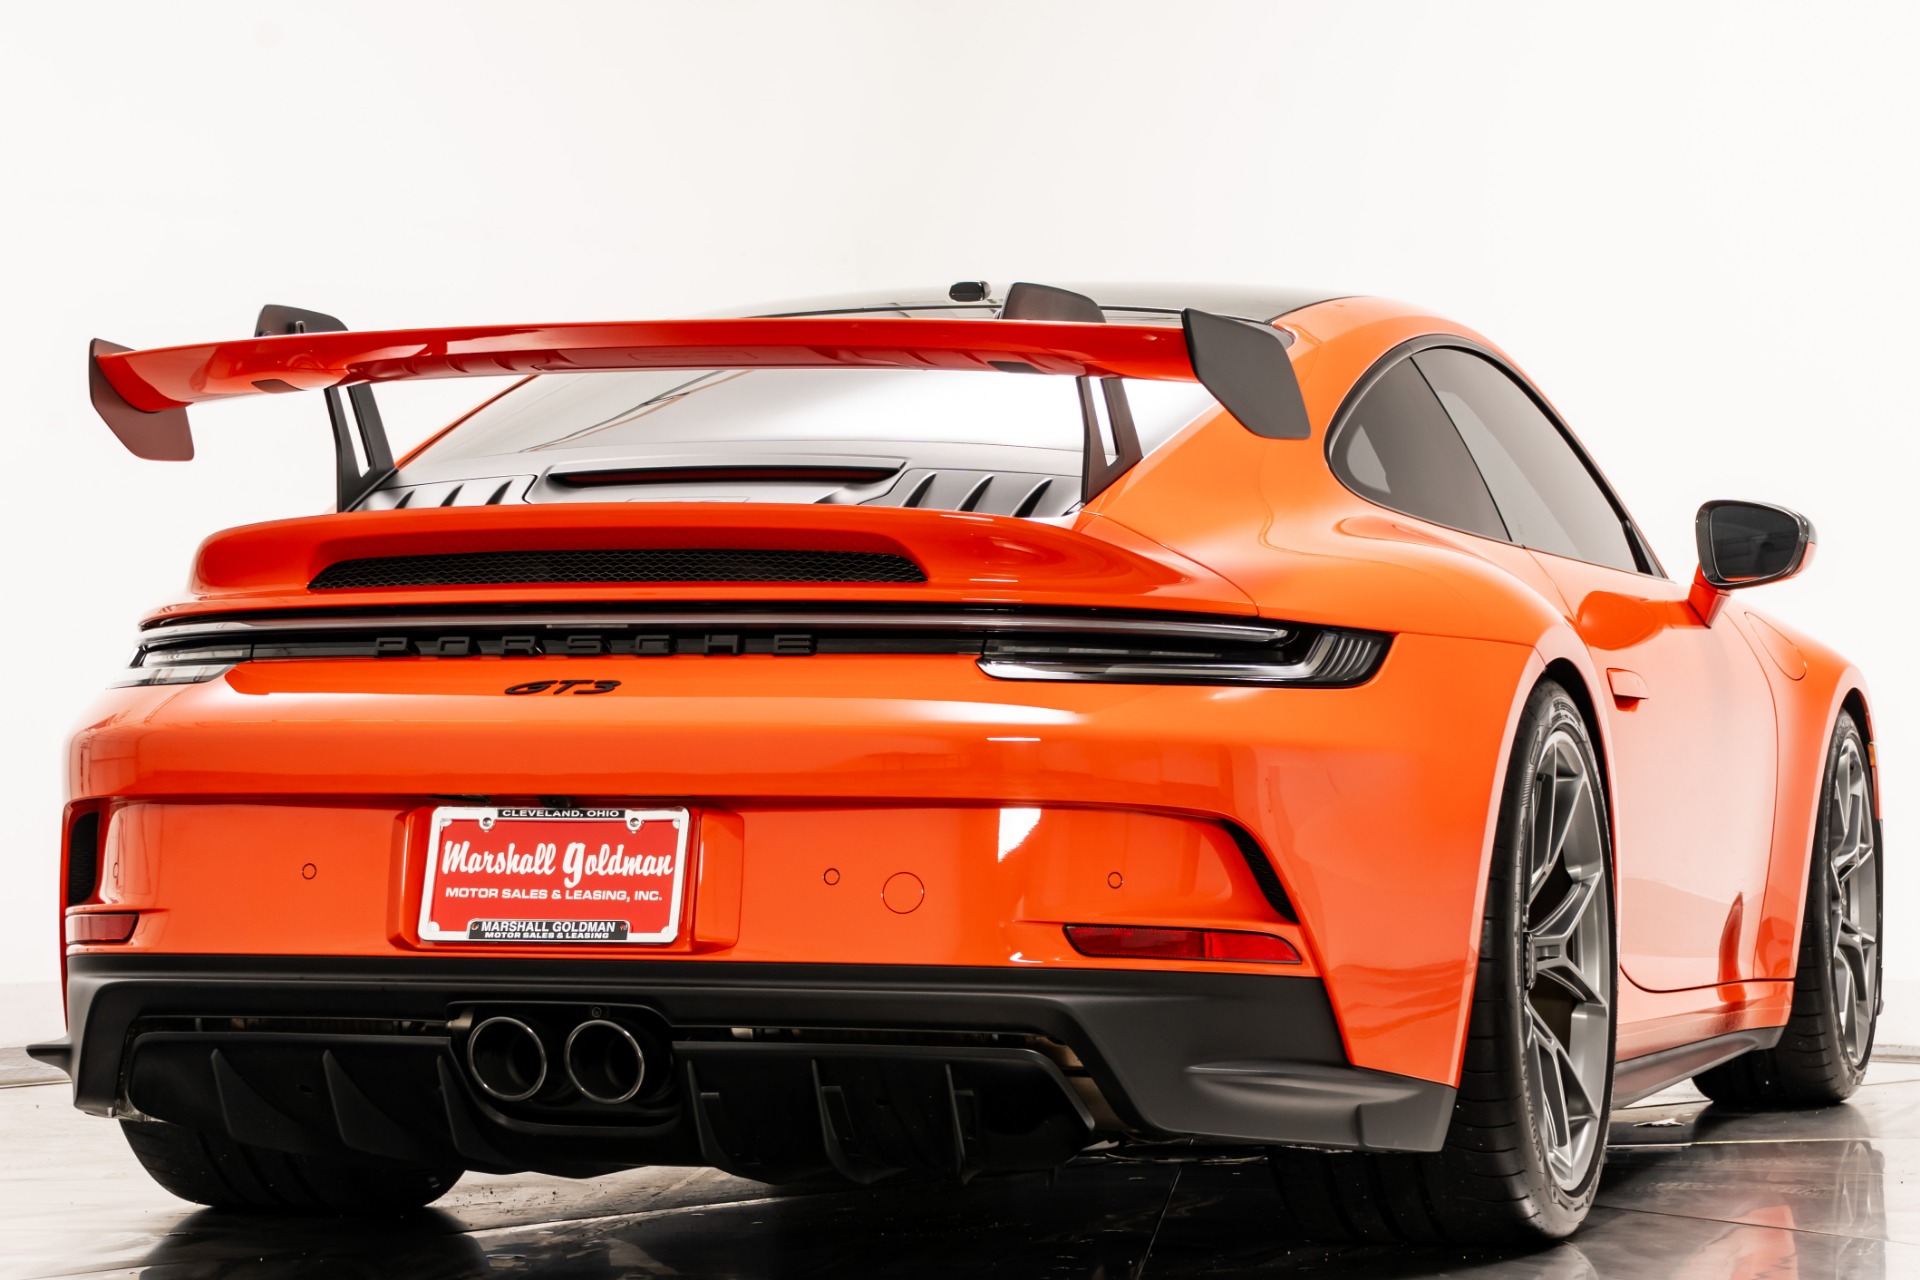 Porsche 911 (992) Carrera 4s Lava Orange Limited Edition To 3000